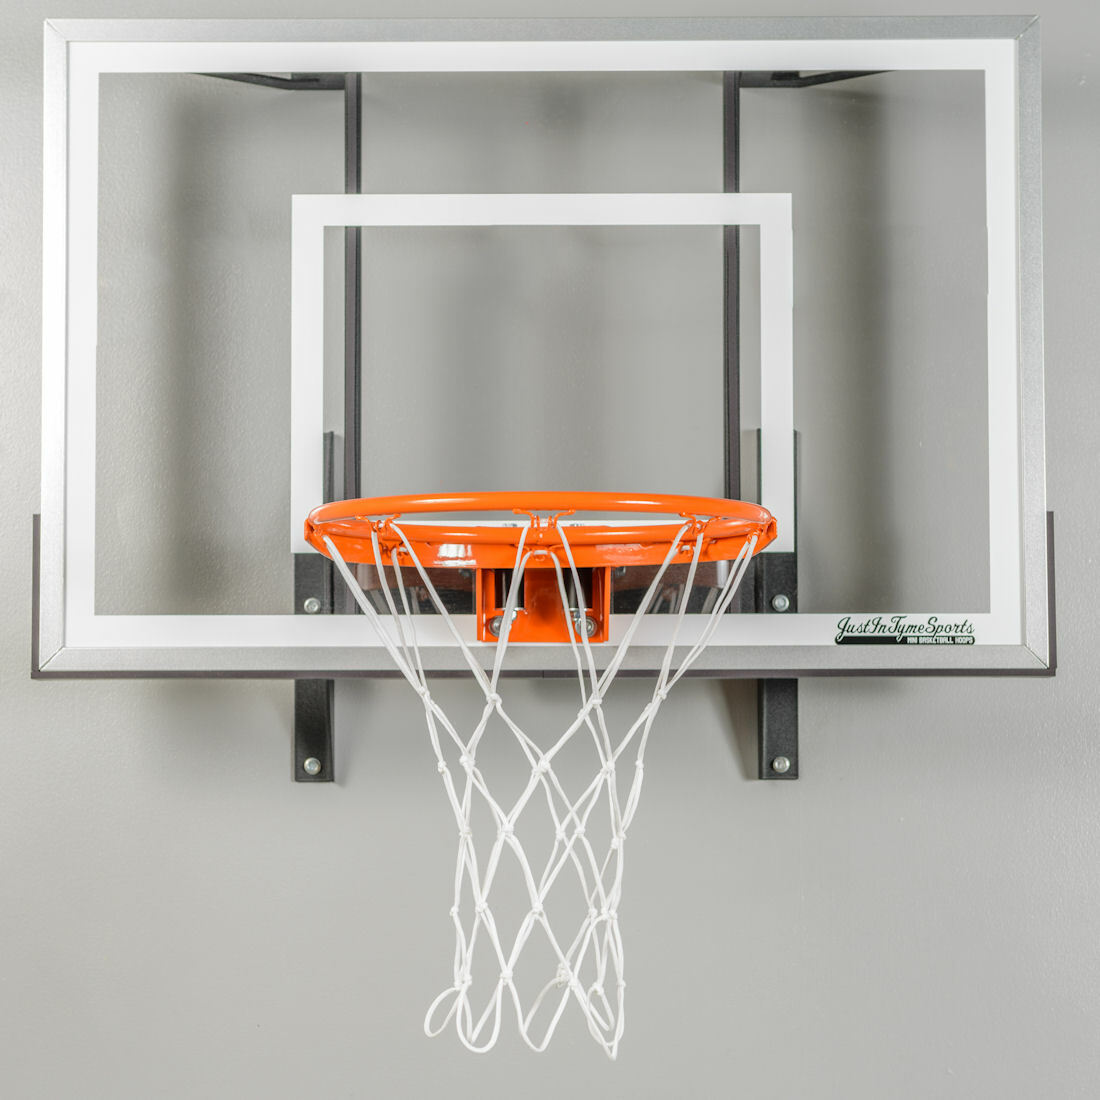 mini wall basketball hoop